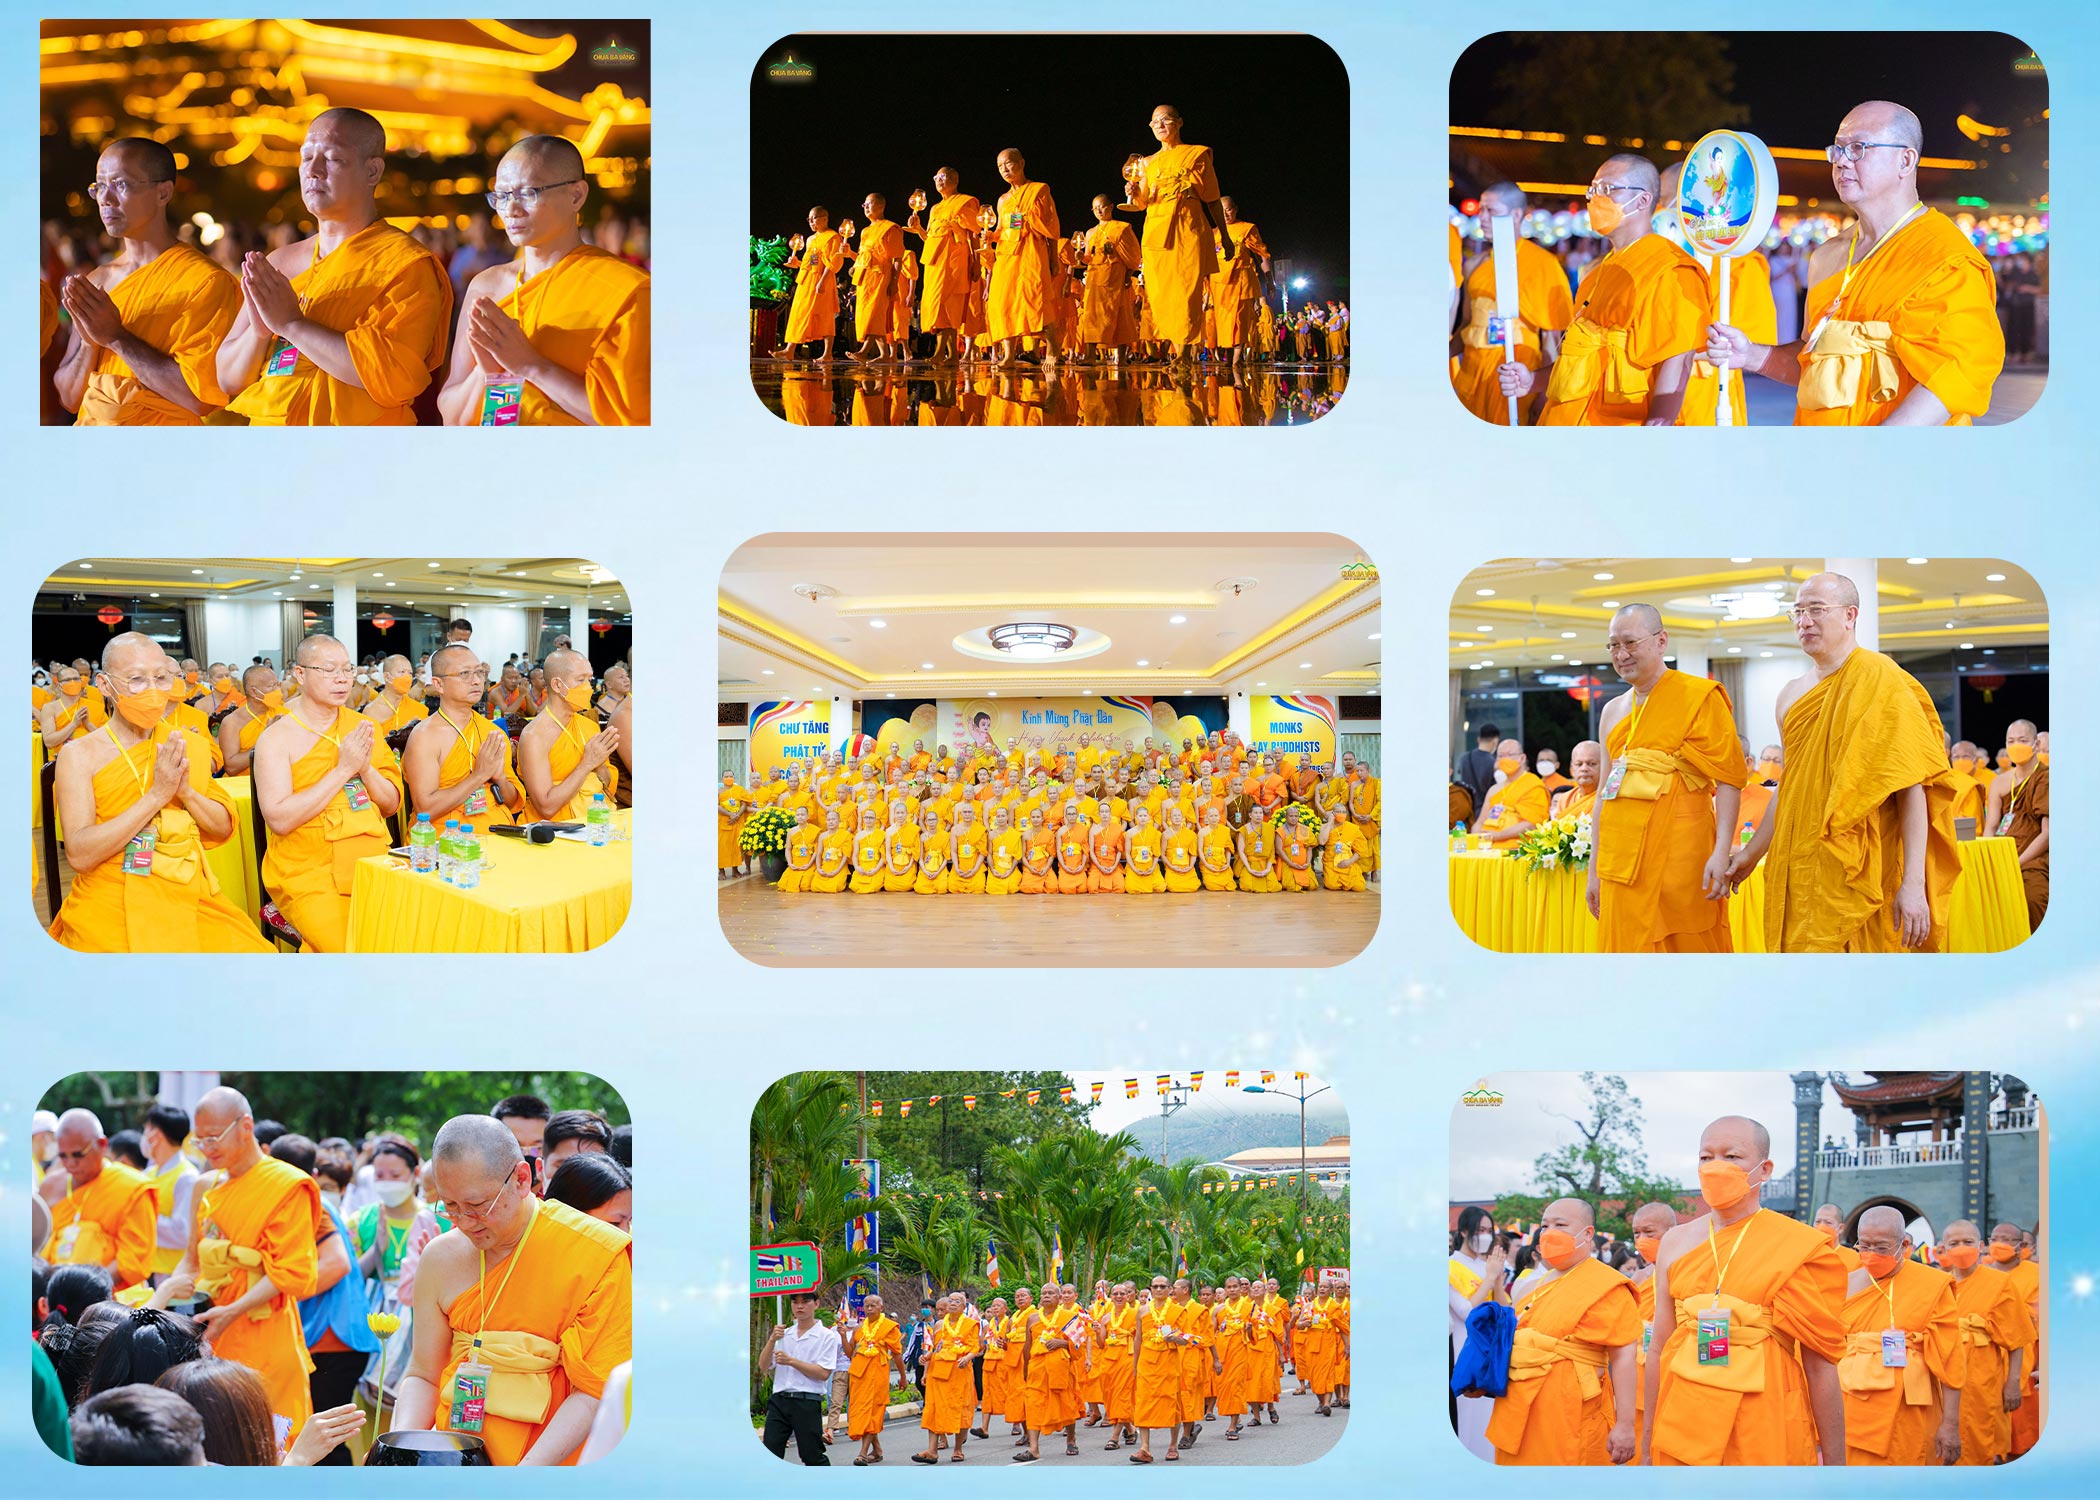 Đoàn chư Tăng chùa Dhammakaya - Thái Lan đến thăm quan Việt Nam và tham dự các hoạt động tại Đại lễ Phật đản tại chùa Ba Vàng